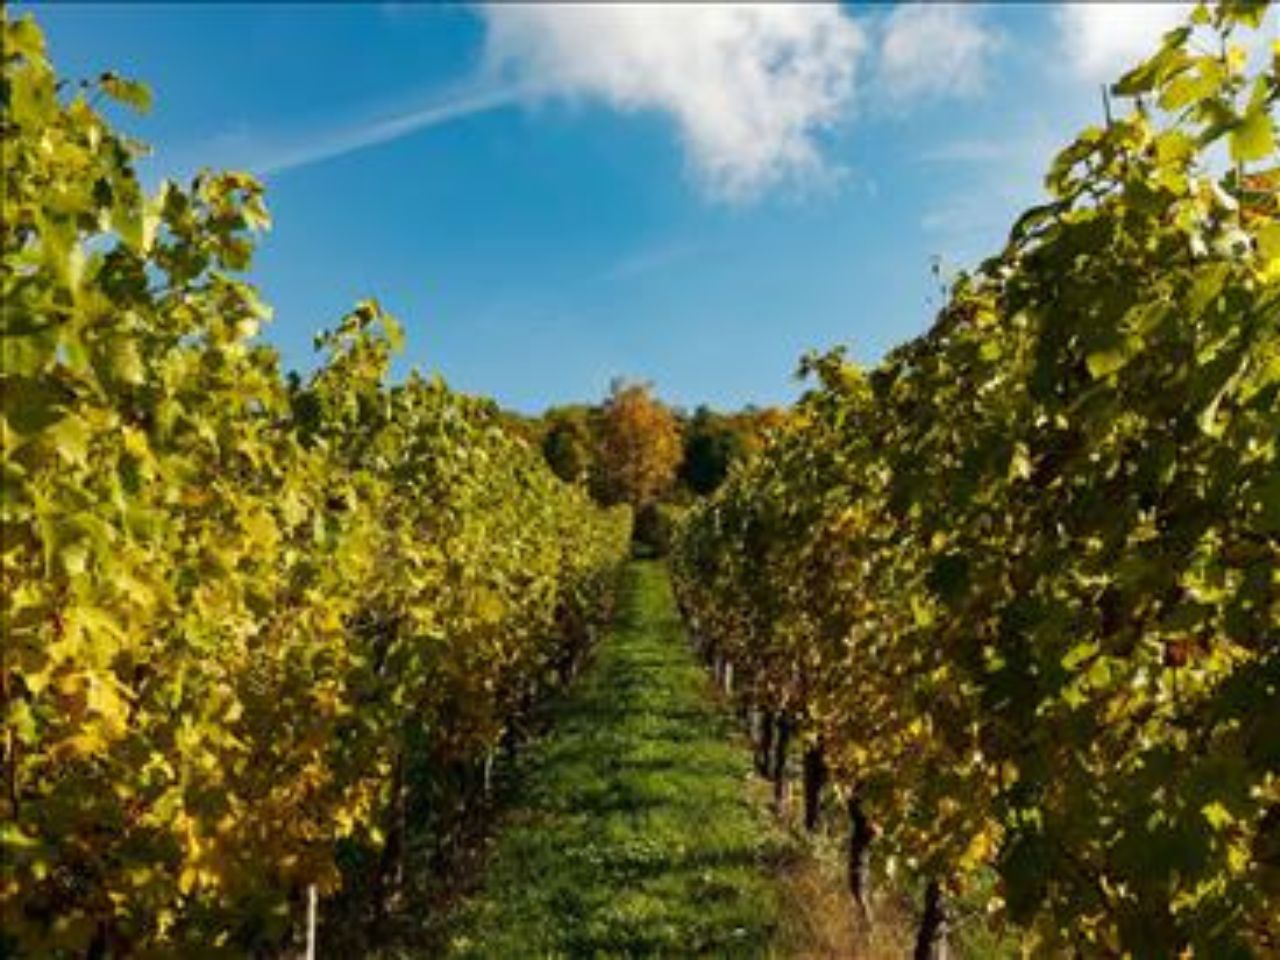 Danni alle viti da peronospora, sì al contributo straordinario ai viticoltori delle Marche